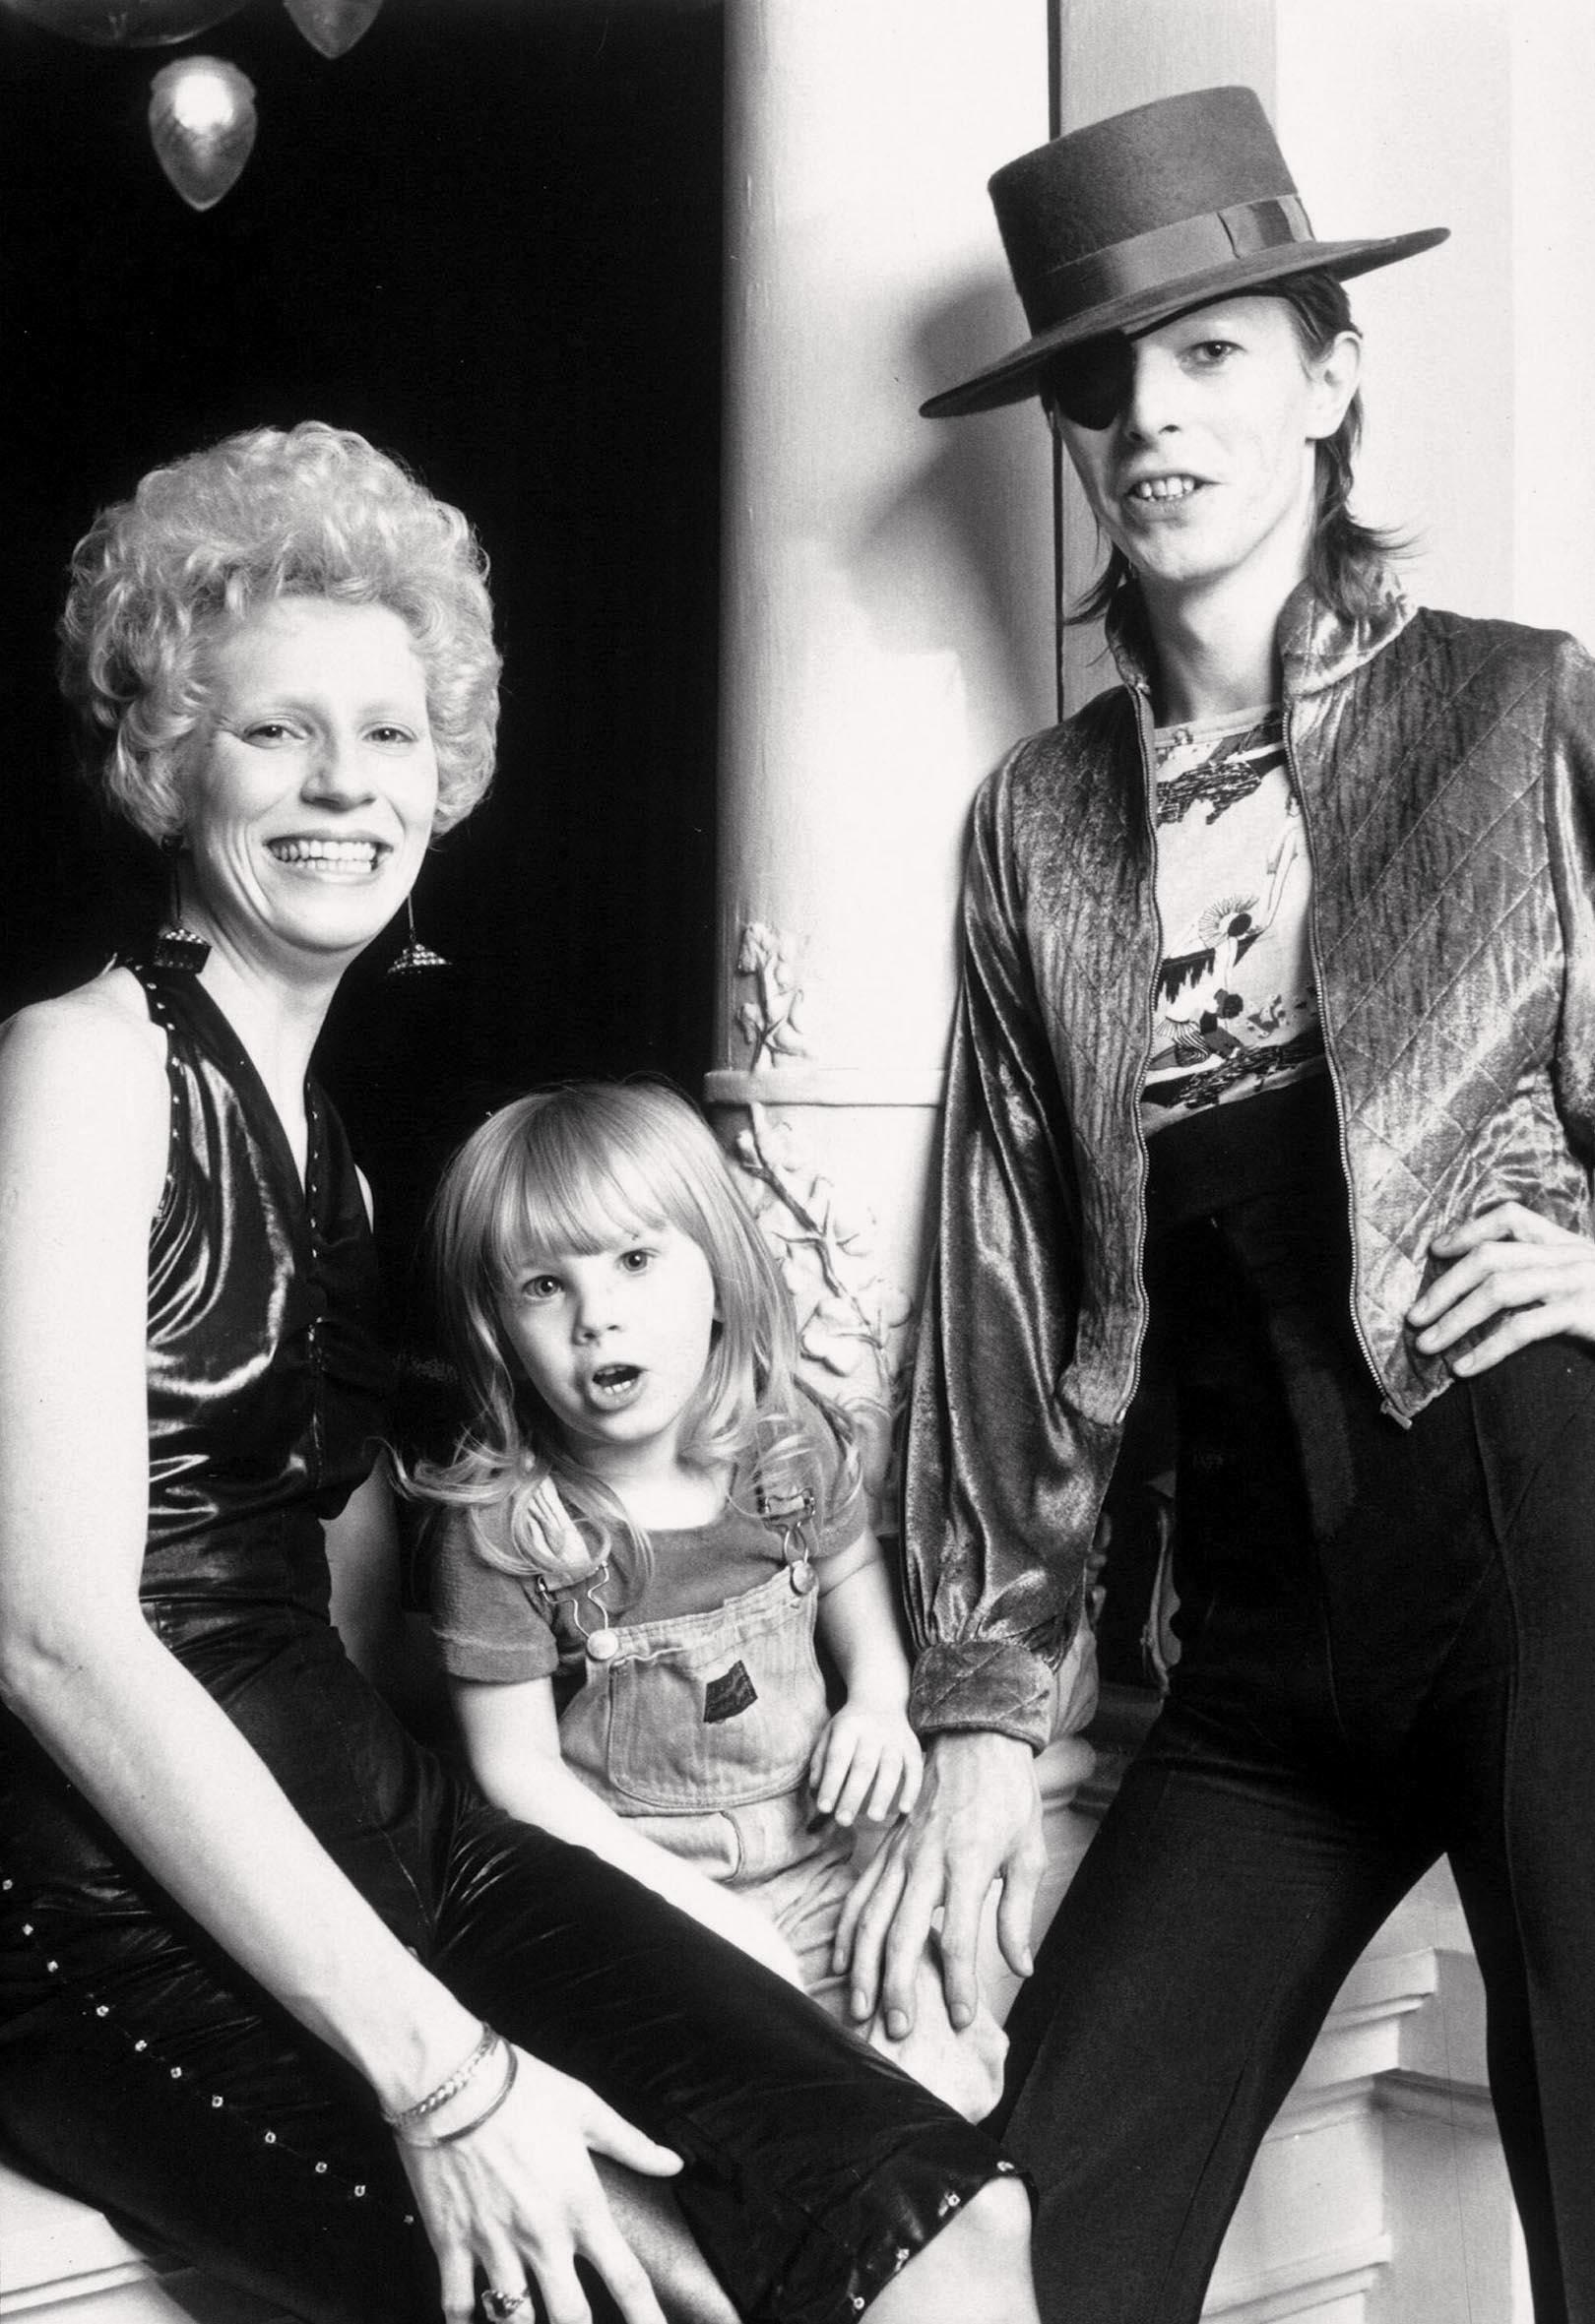 David Bowie och Angela Barnett träffades på en klubb i Soho, London, 1969. Två år senare föddes sonen Duncan Zowie.